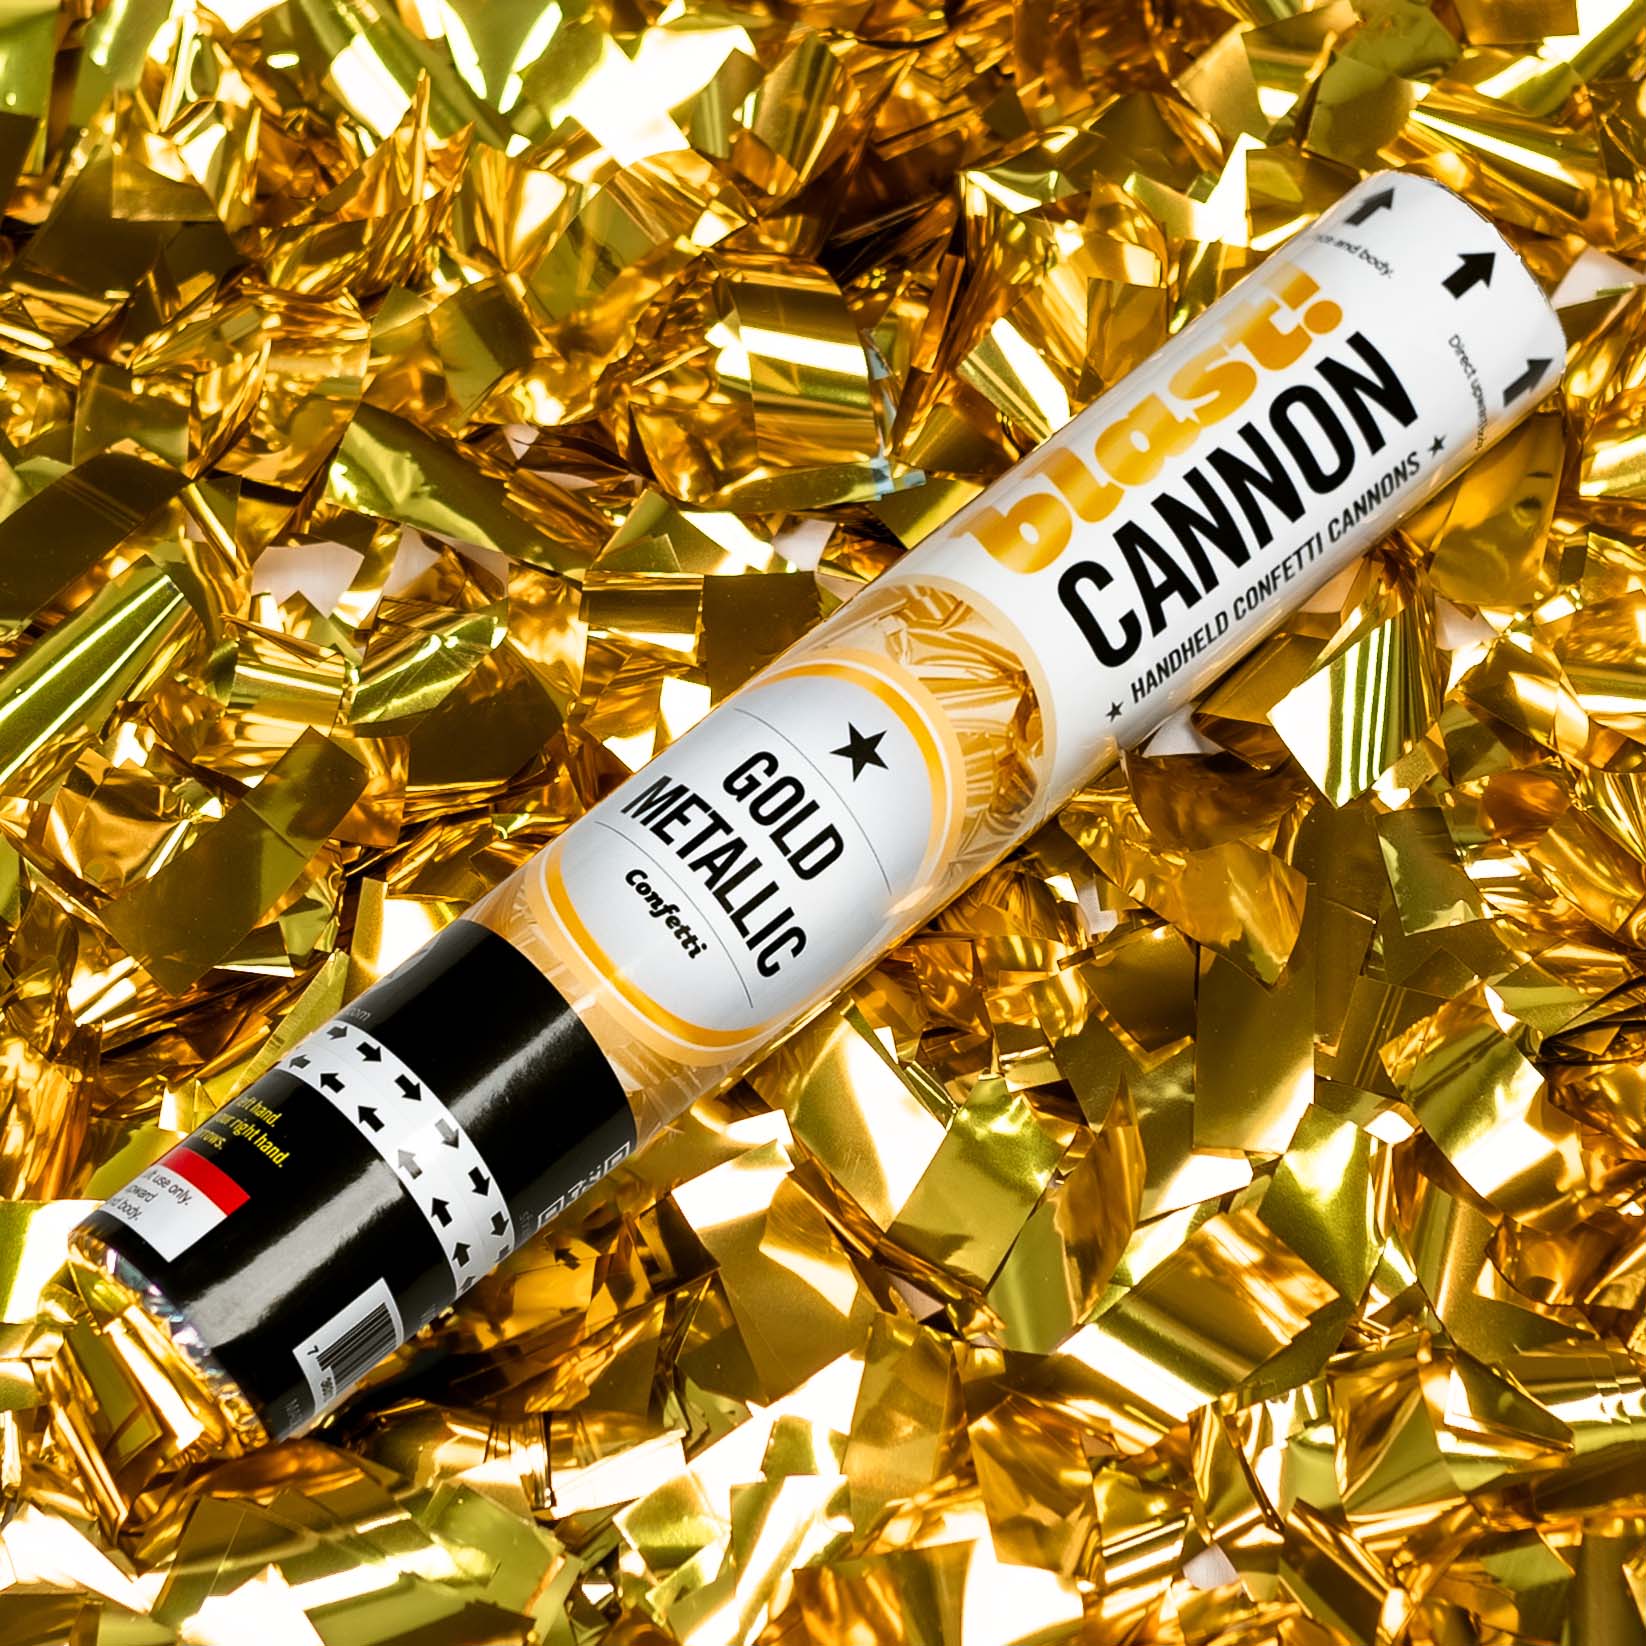 Confetti Streamers - Bright Gold Metallic, Cannon-Ready. USA Factory –  Times Square Confetti